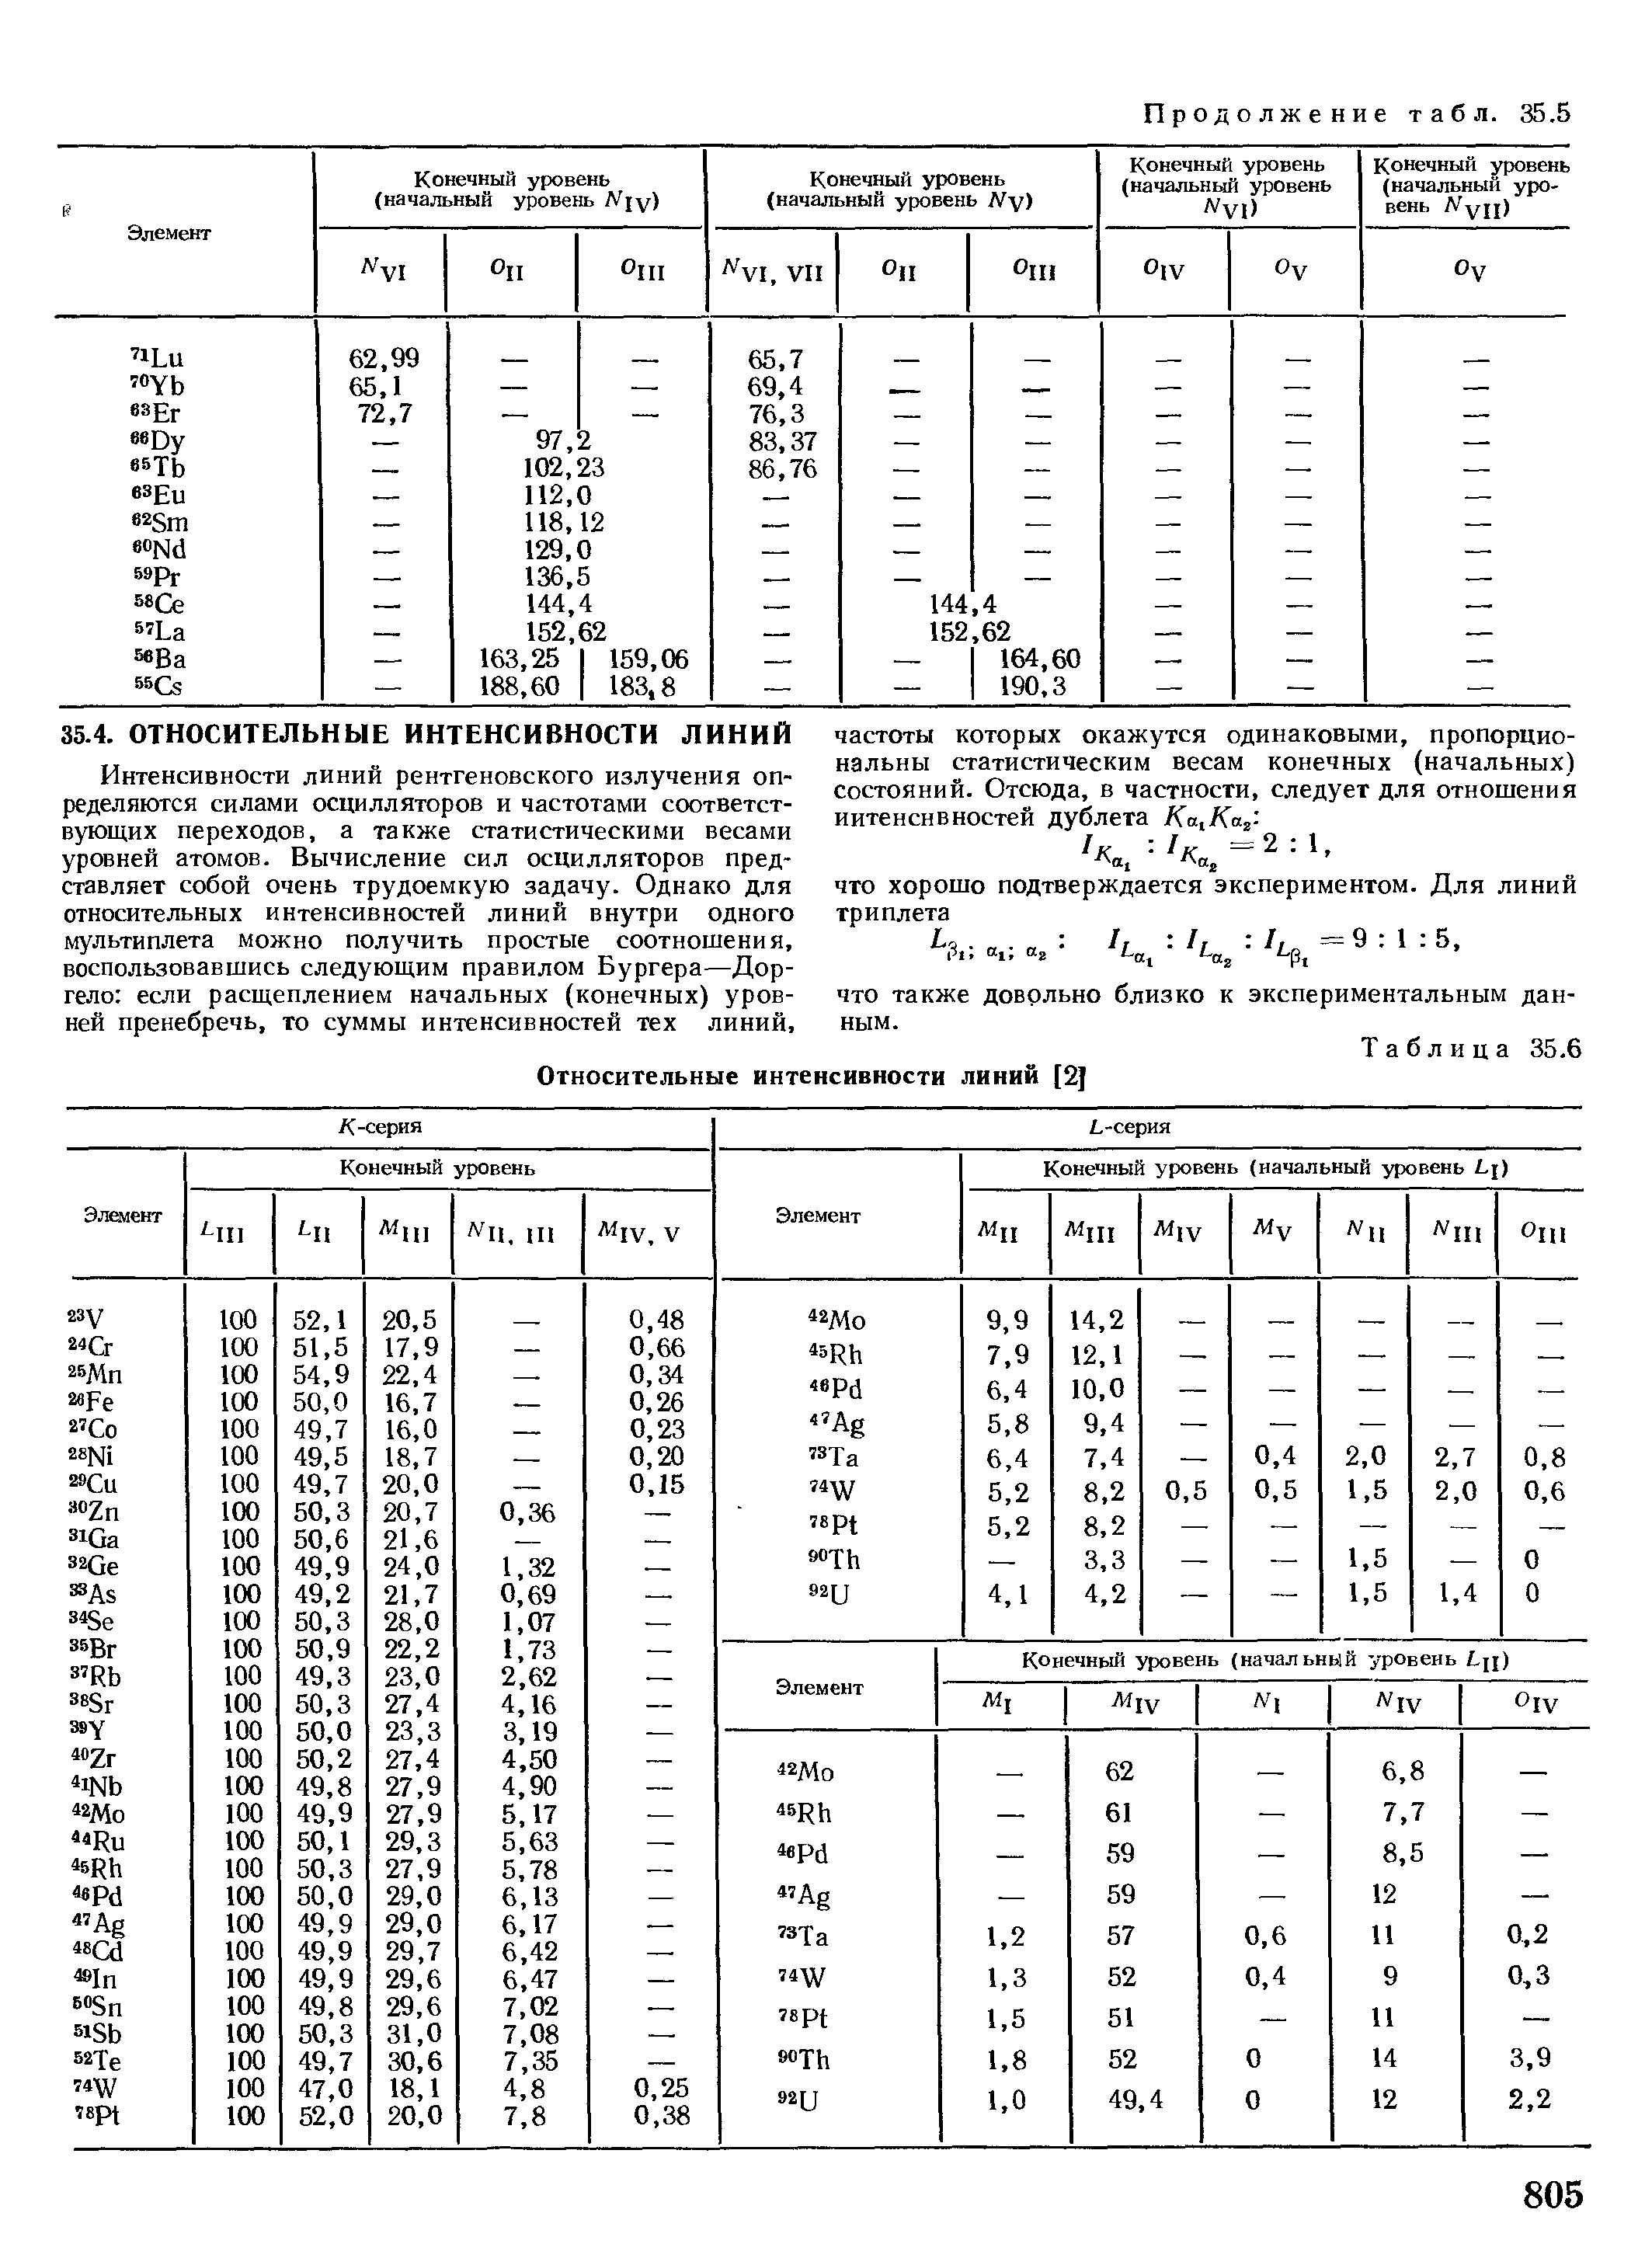 Таблица 35.6 Относительные интенсивности линий [2J
